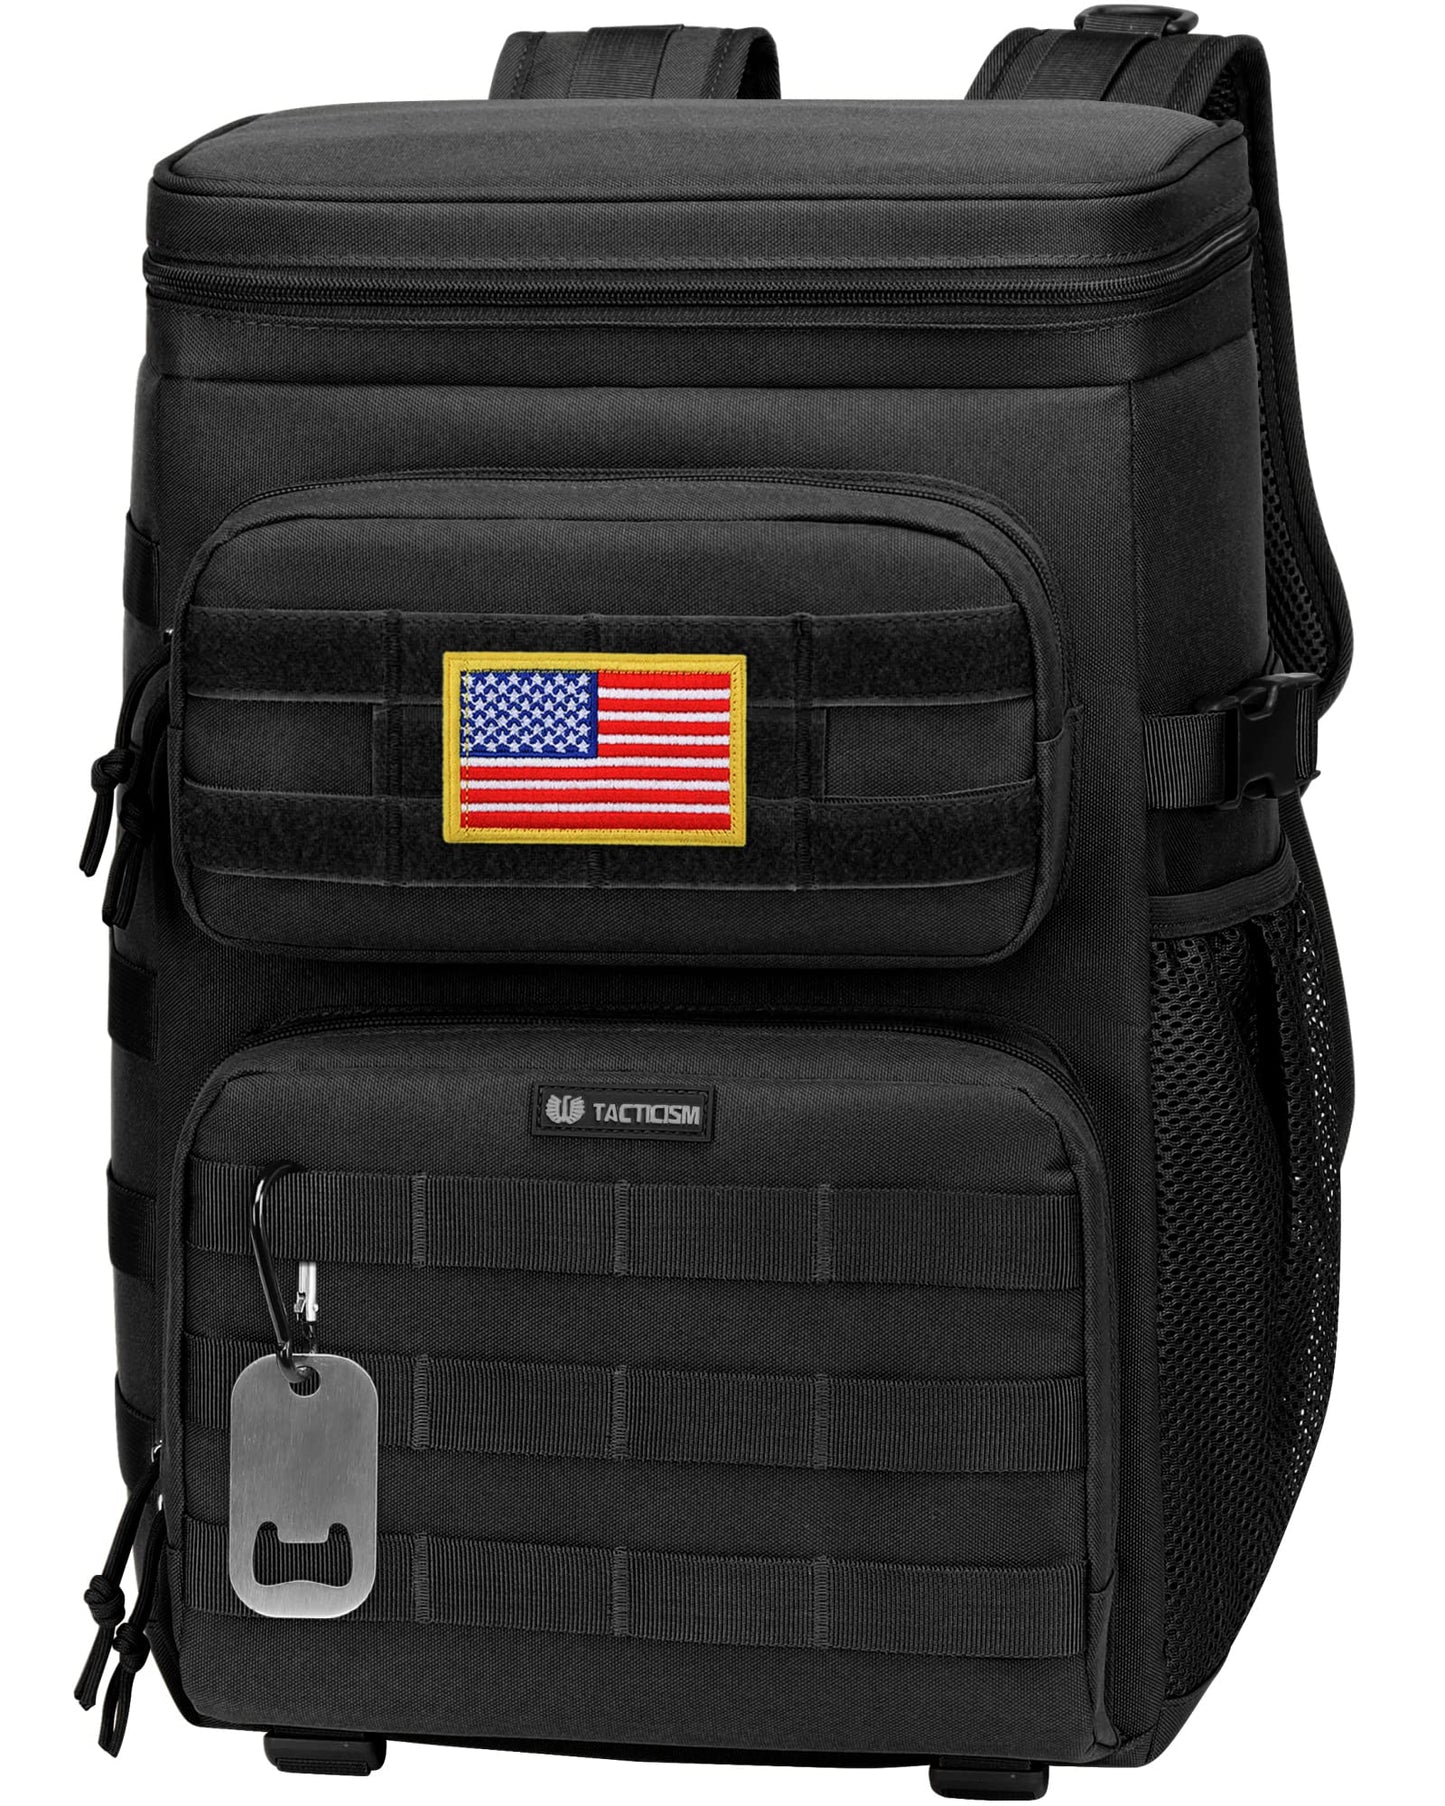 TBCH02 Insulated Cooler Lightweight Backpack